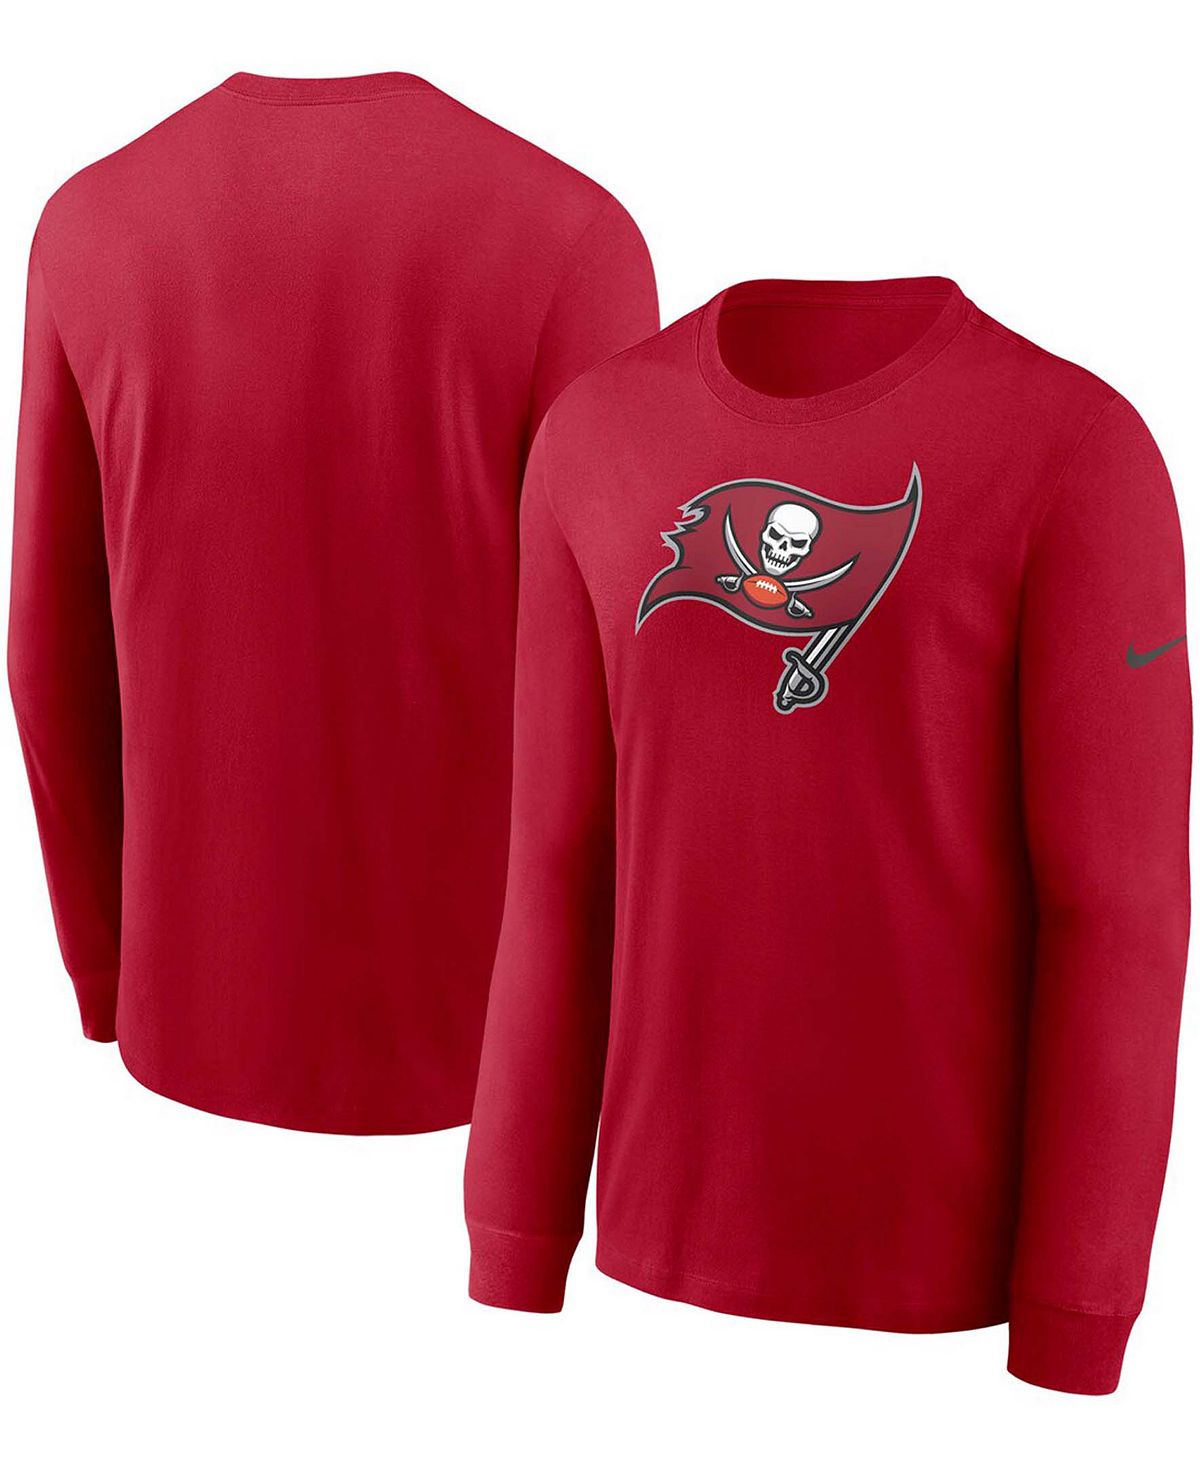 Мужская красная футболка с длинным рукавом и логотипом Tampa Bay Buccaneers Primary Nike футболки print bar tampa bay lightning